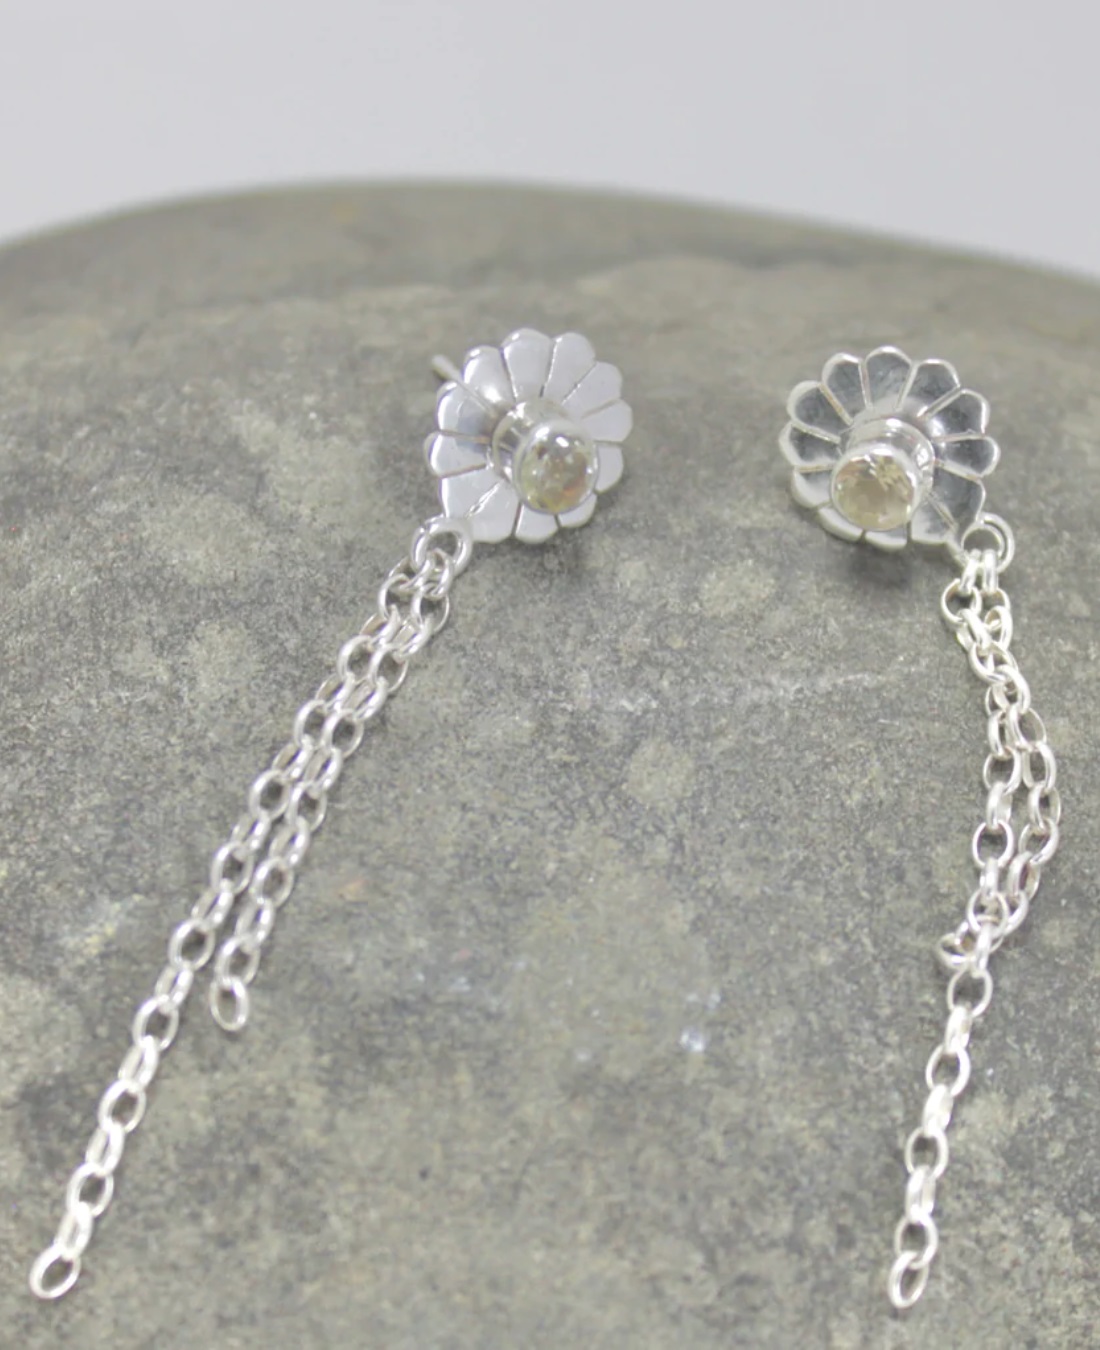 Daisy chain silver earrings on rock